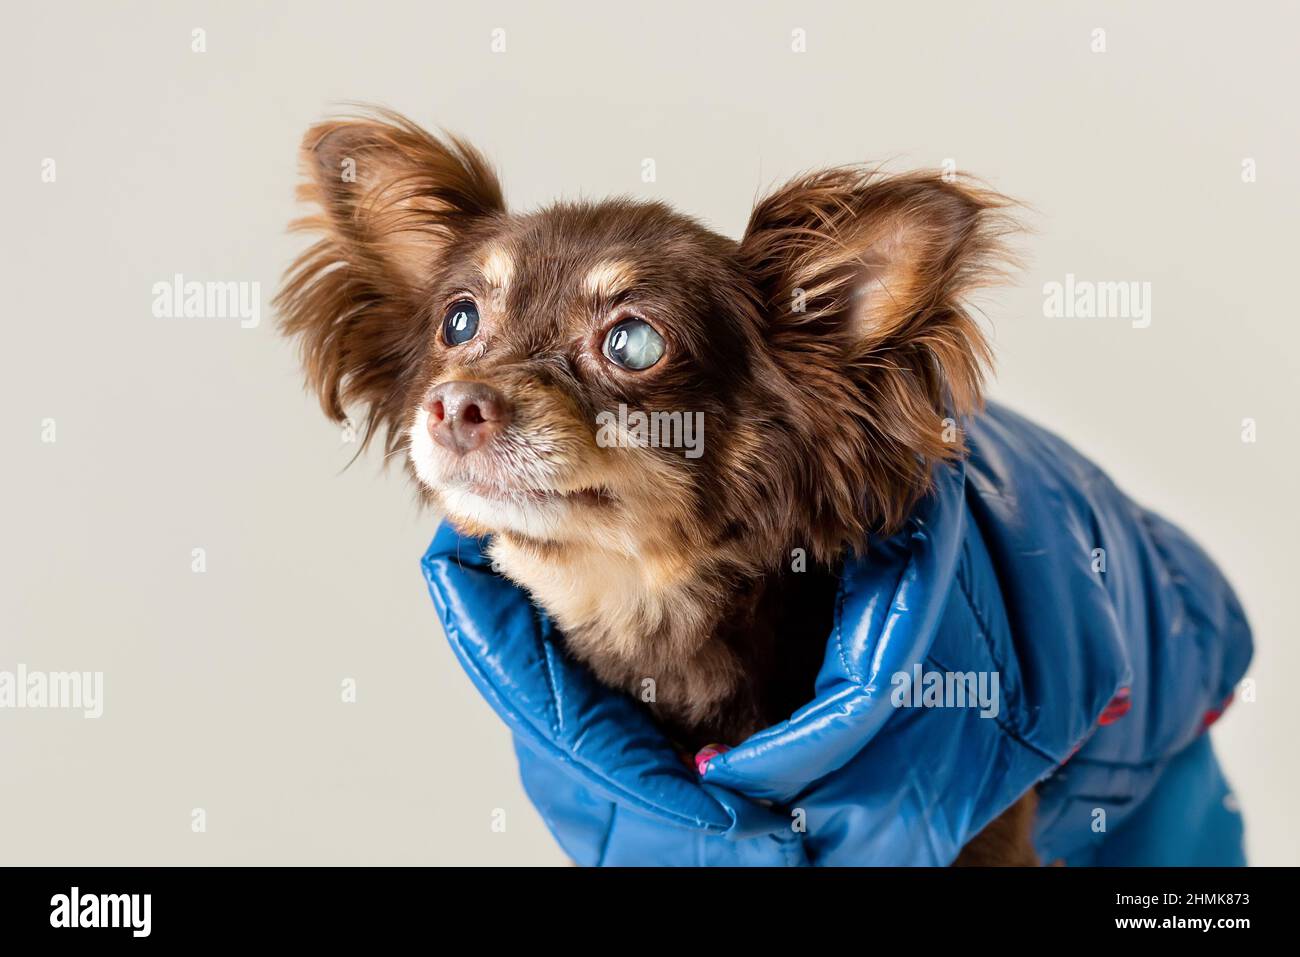 Piccolo vecchio cane purebred di razza terrer giocattolo ha problema con gli occhi parzialmente ciechi della cataratta. Foto Stock